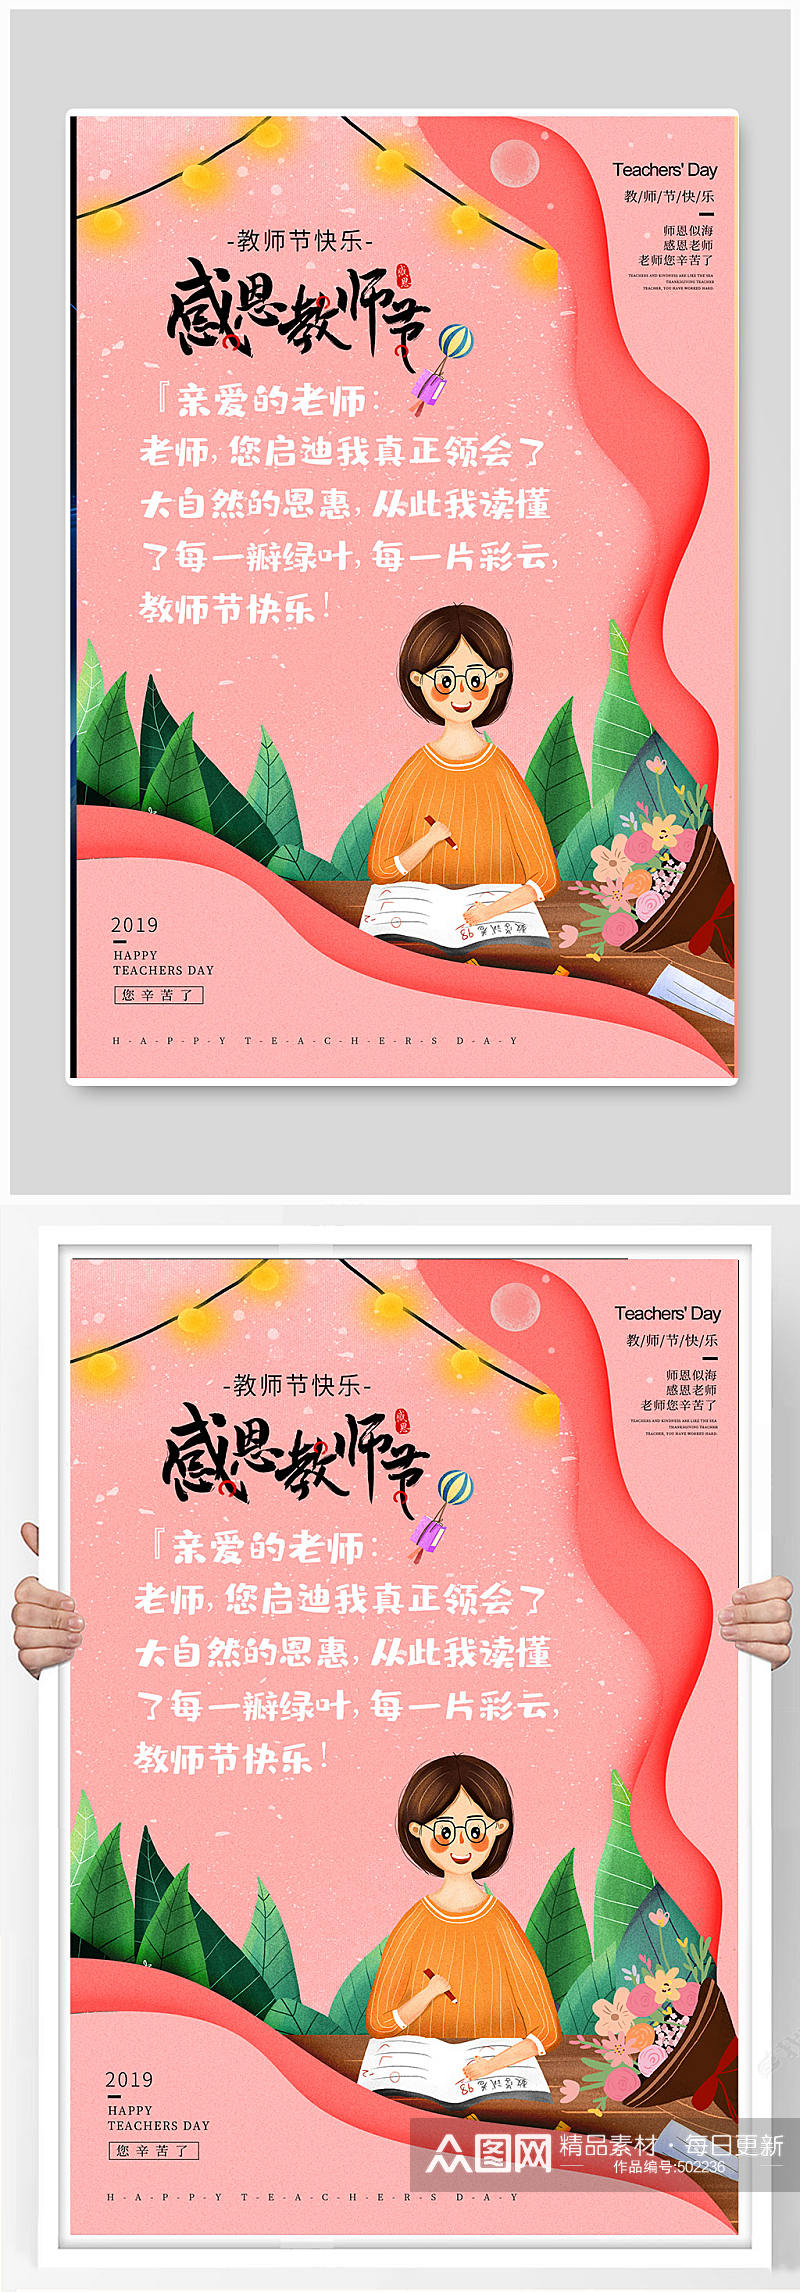 剪纸风教师节快乐系列海报素材